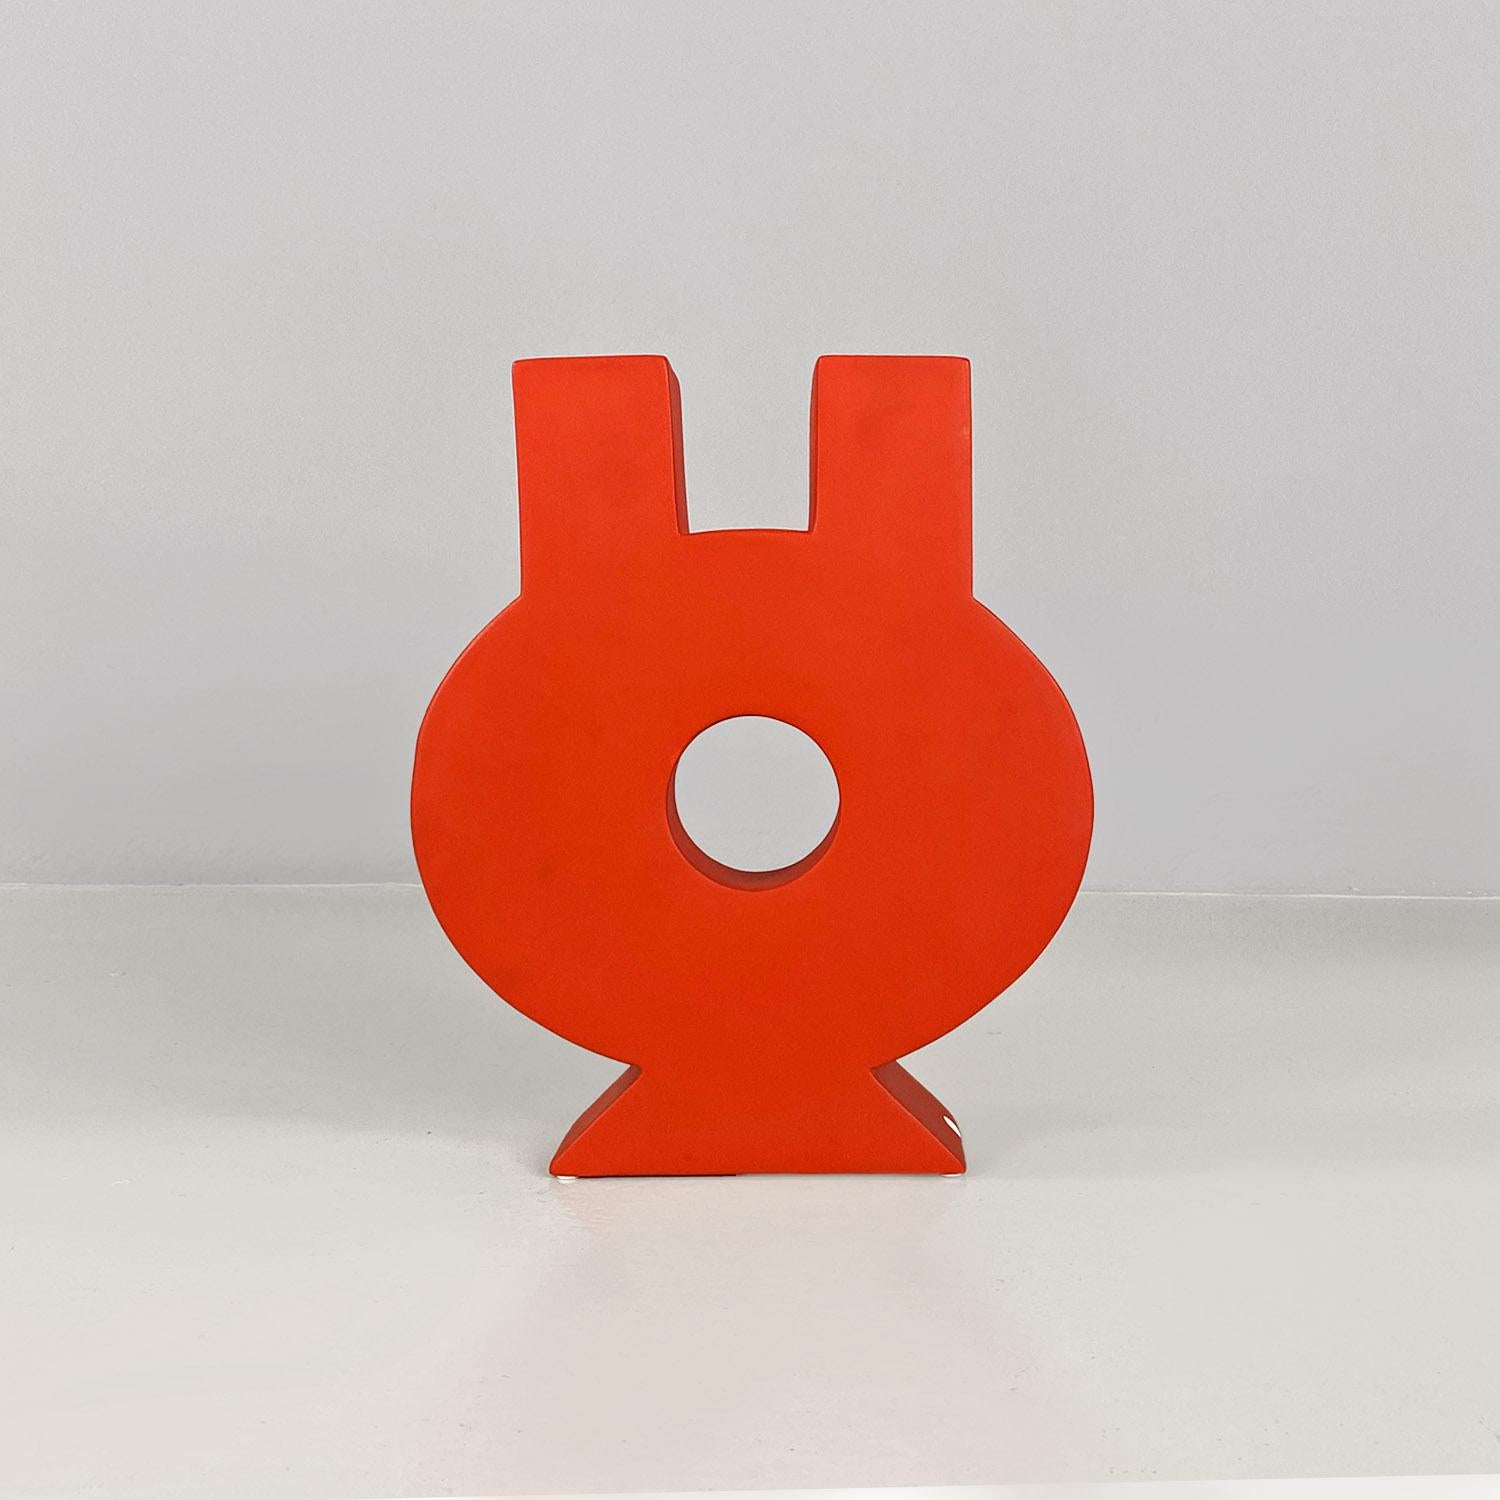 Keramische Skulptur in leuchtendem Rot mit mattem Finish. Der Gegenstand der Skulptur ist geometrisch und rund, mit einem runden Loch in der Mitte und zwei quadratischen Öffnungen im oberen Teil. Die Skulptur kann auch als Vase verwendet